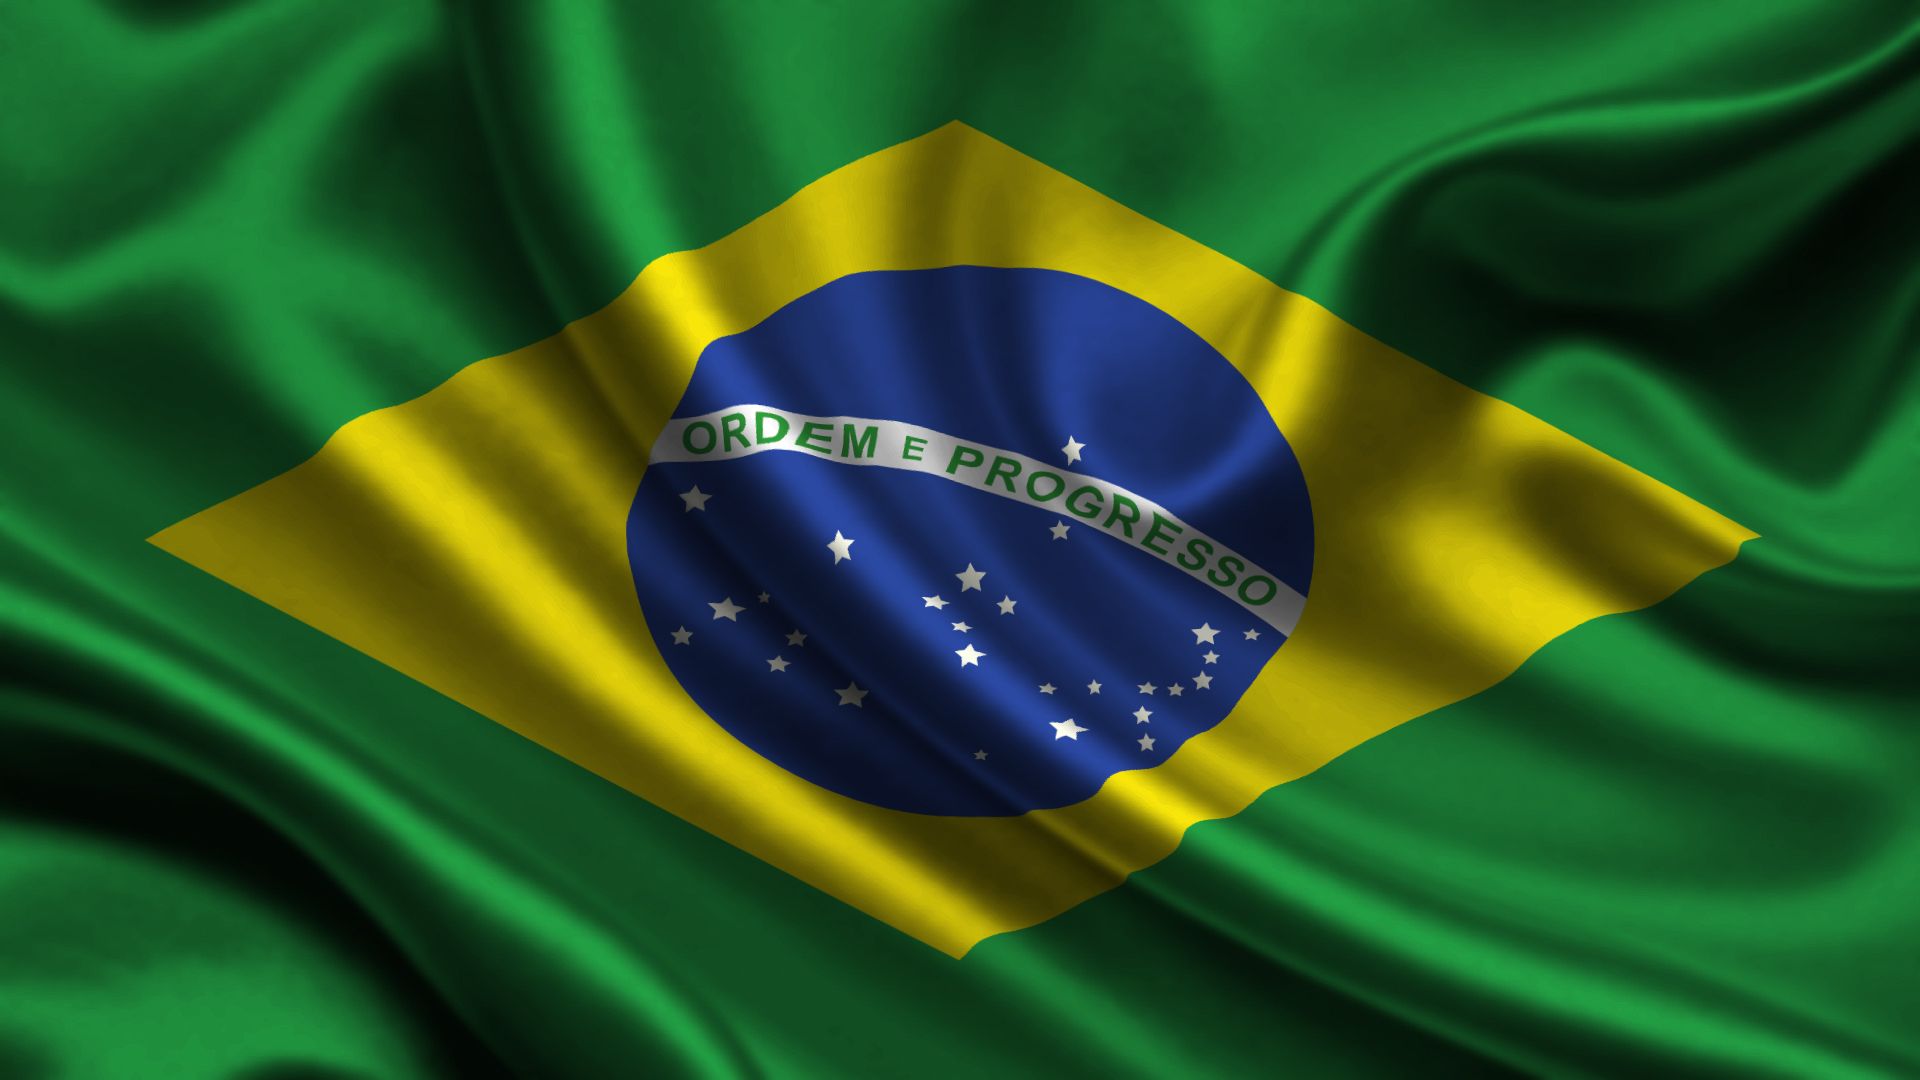 Скачать обои Флаг Бразилии на телефон бесплатно